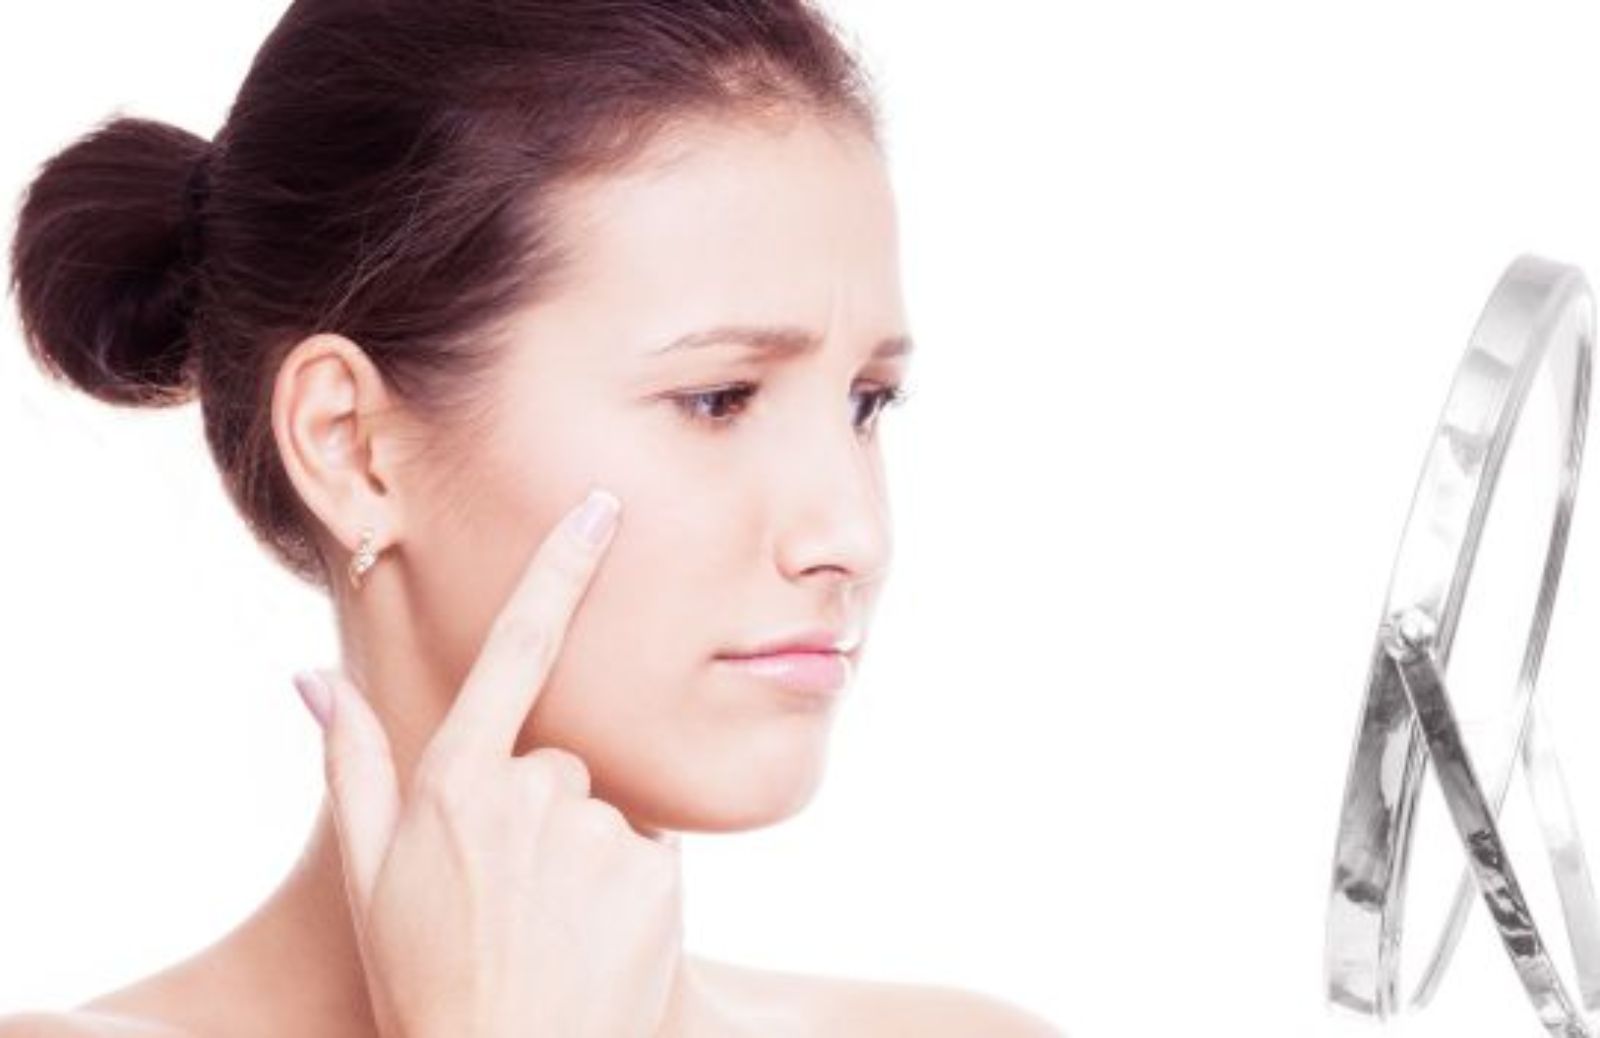 Come preparare in casa una maschera contro l'acne